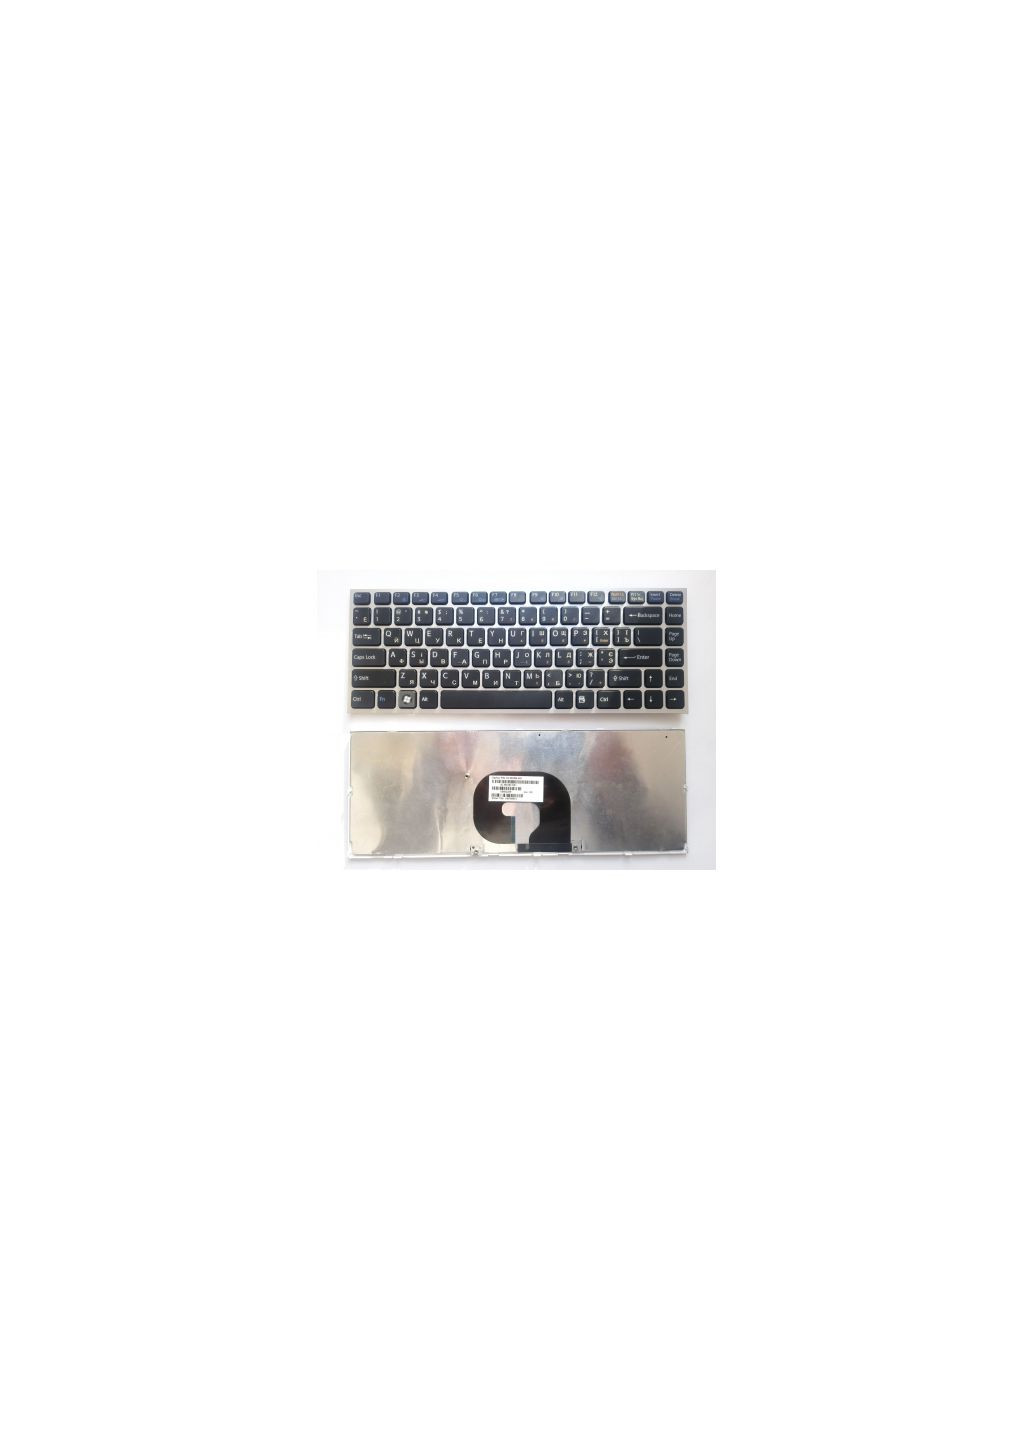 Клавиатура ноутбука VPCY черная с серебристой рамкой UA (A43441) Sony vpc-y чeрная с серебристой рамкой ua (276706359)